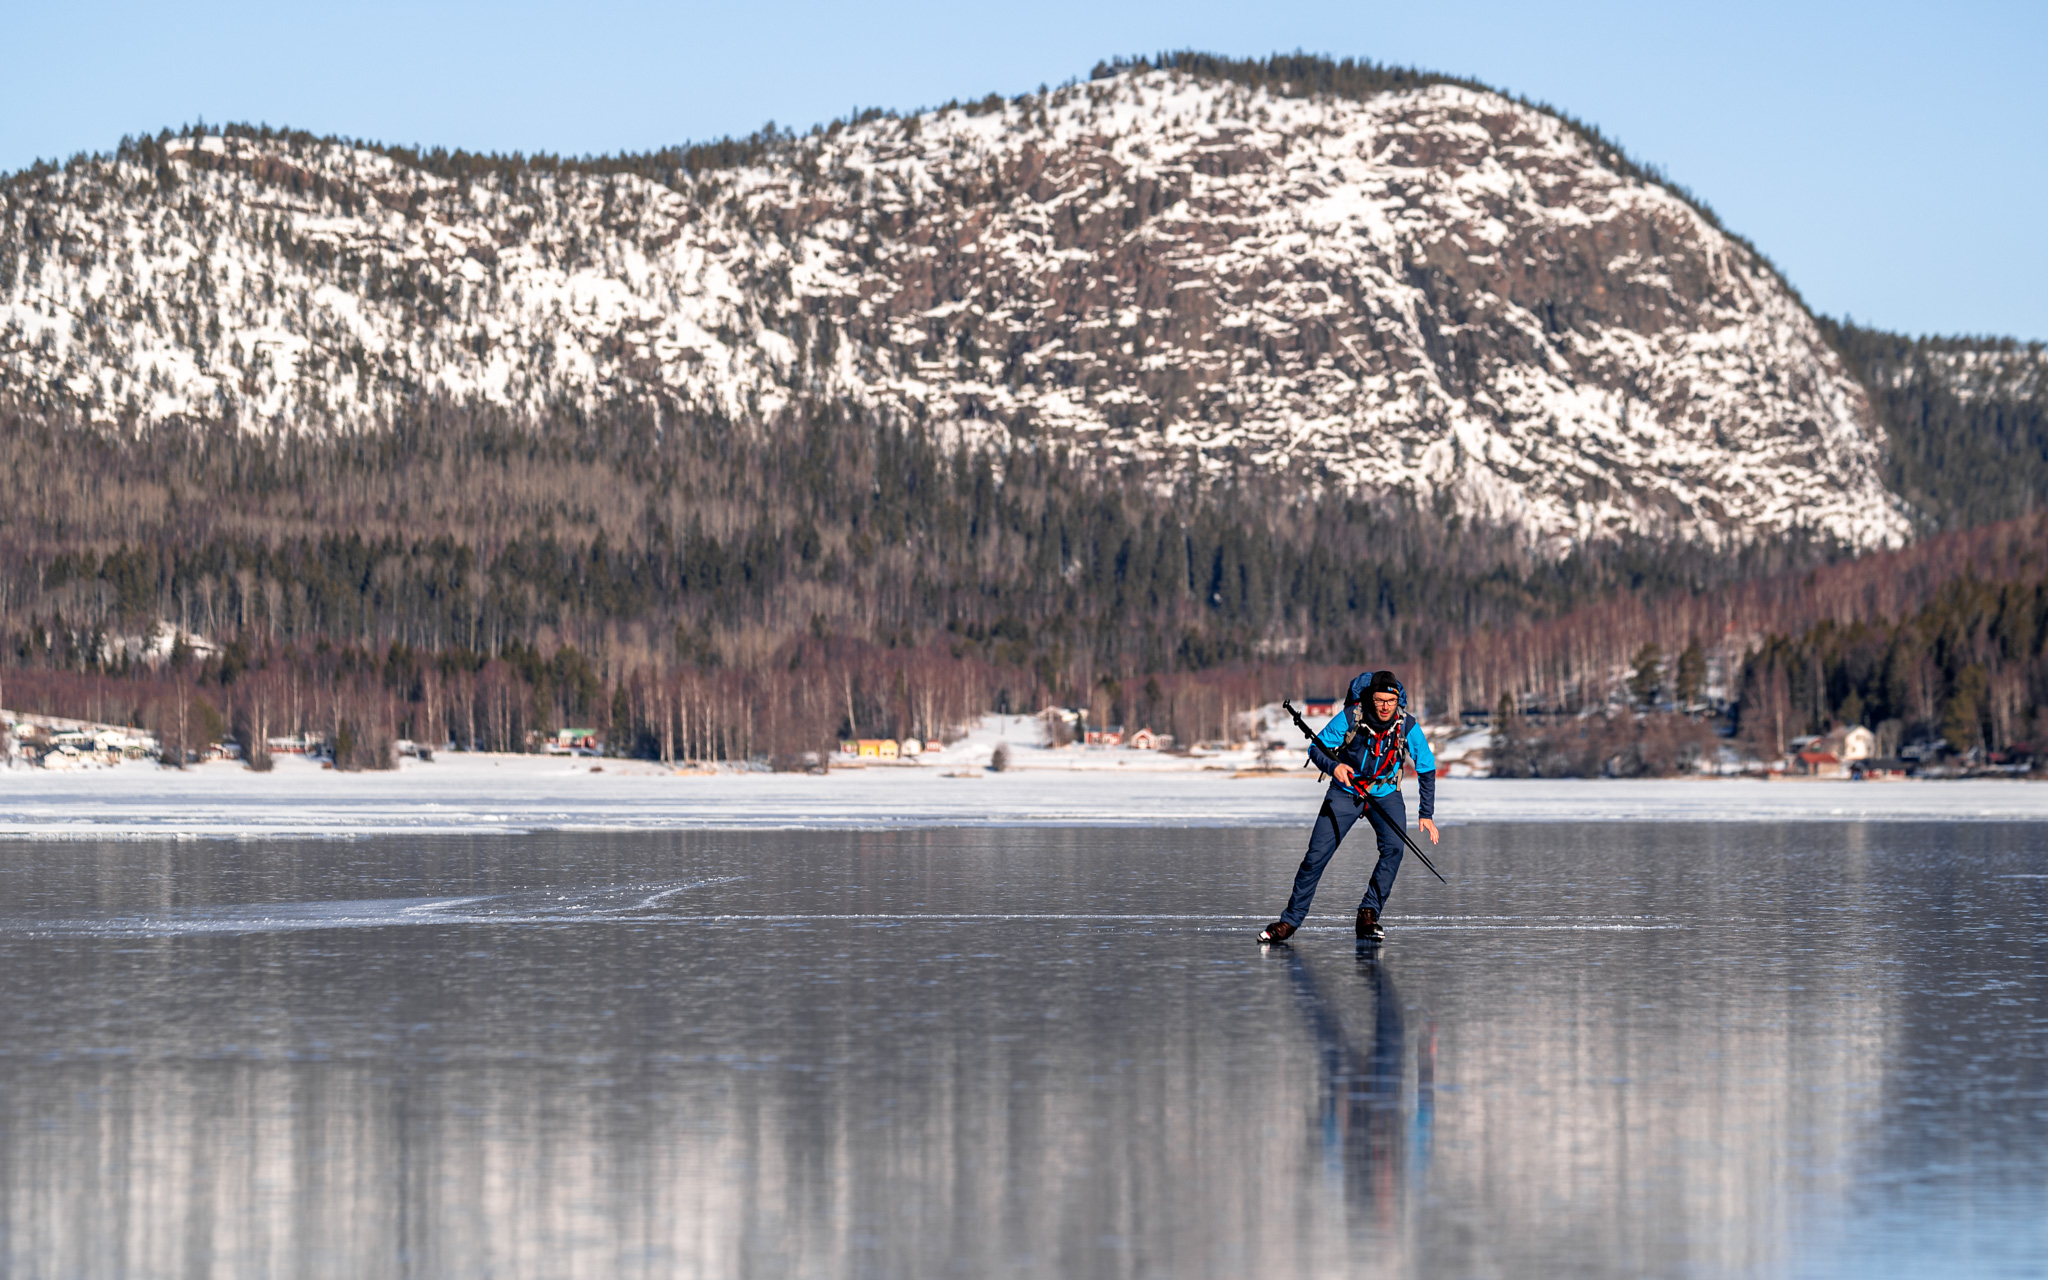 Skating in front of Skuleberget, north of Sweden